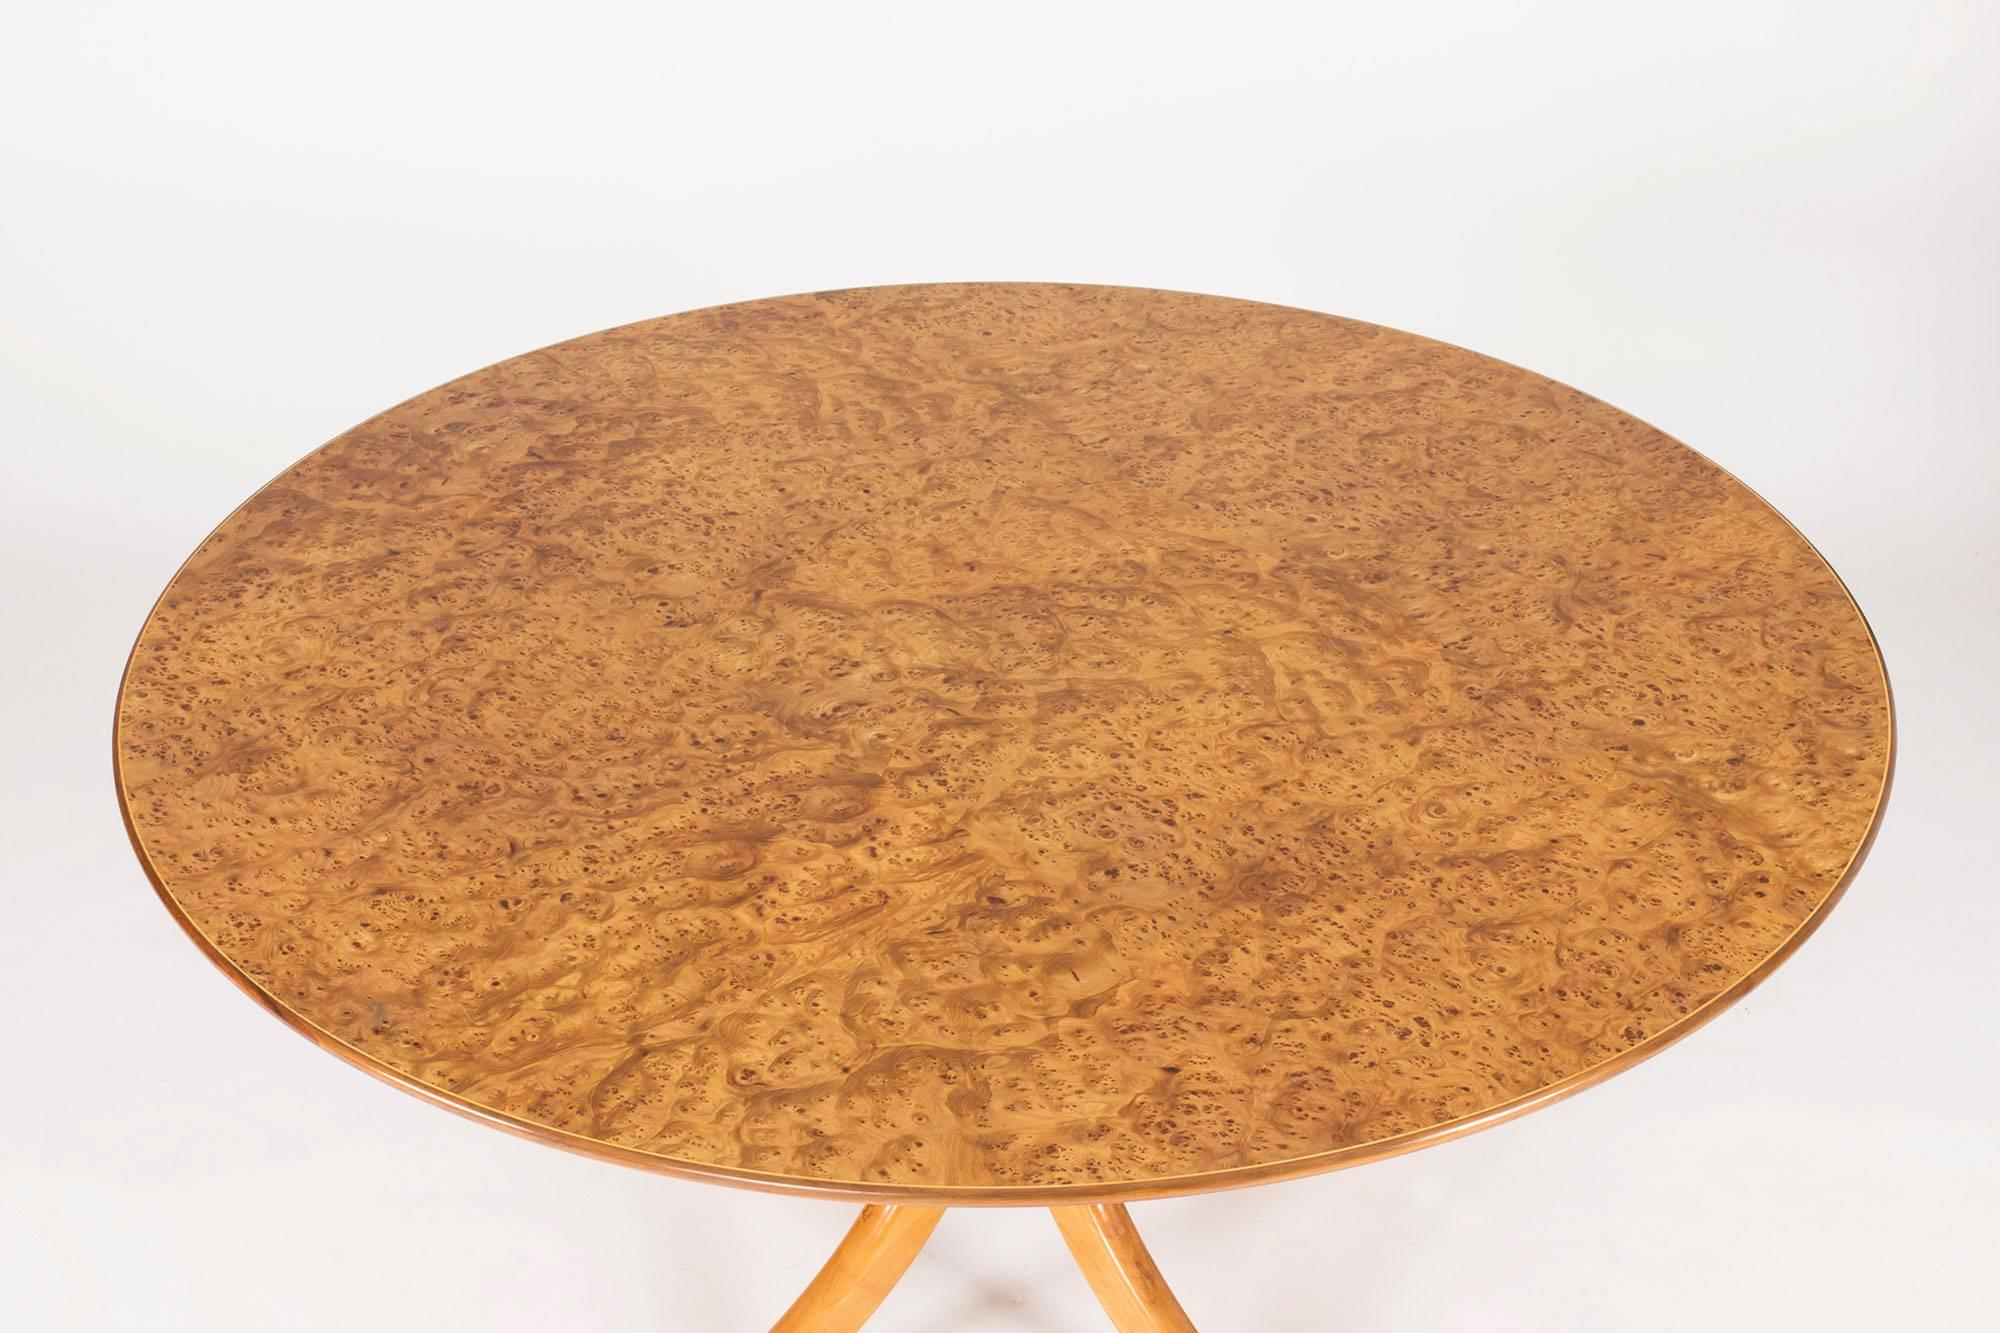 Hardwood Alder Root Dining Table by Josef Frank